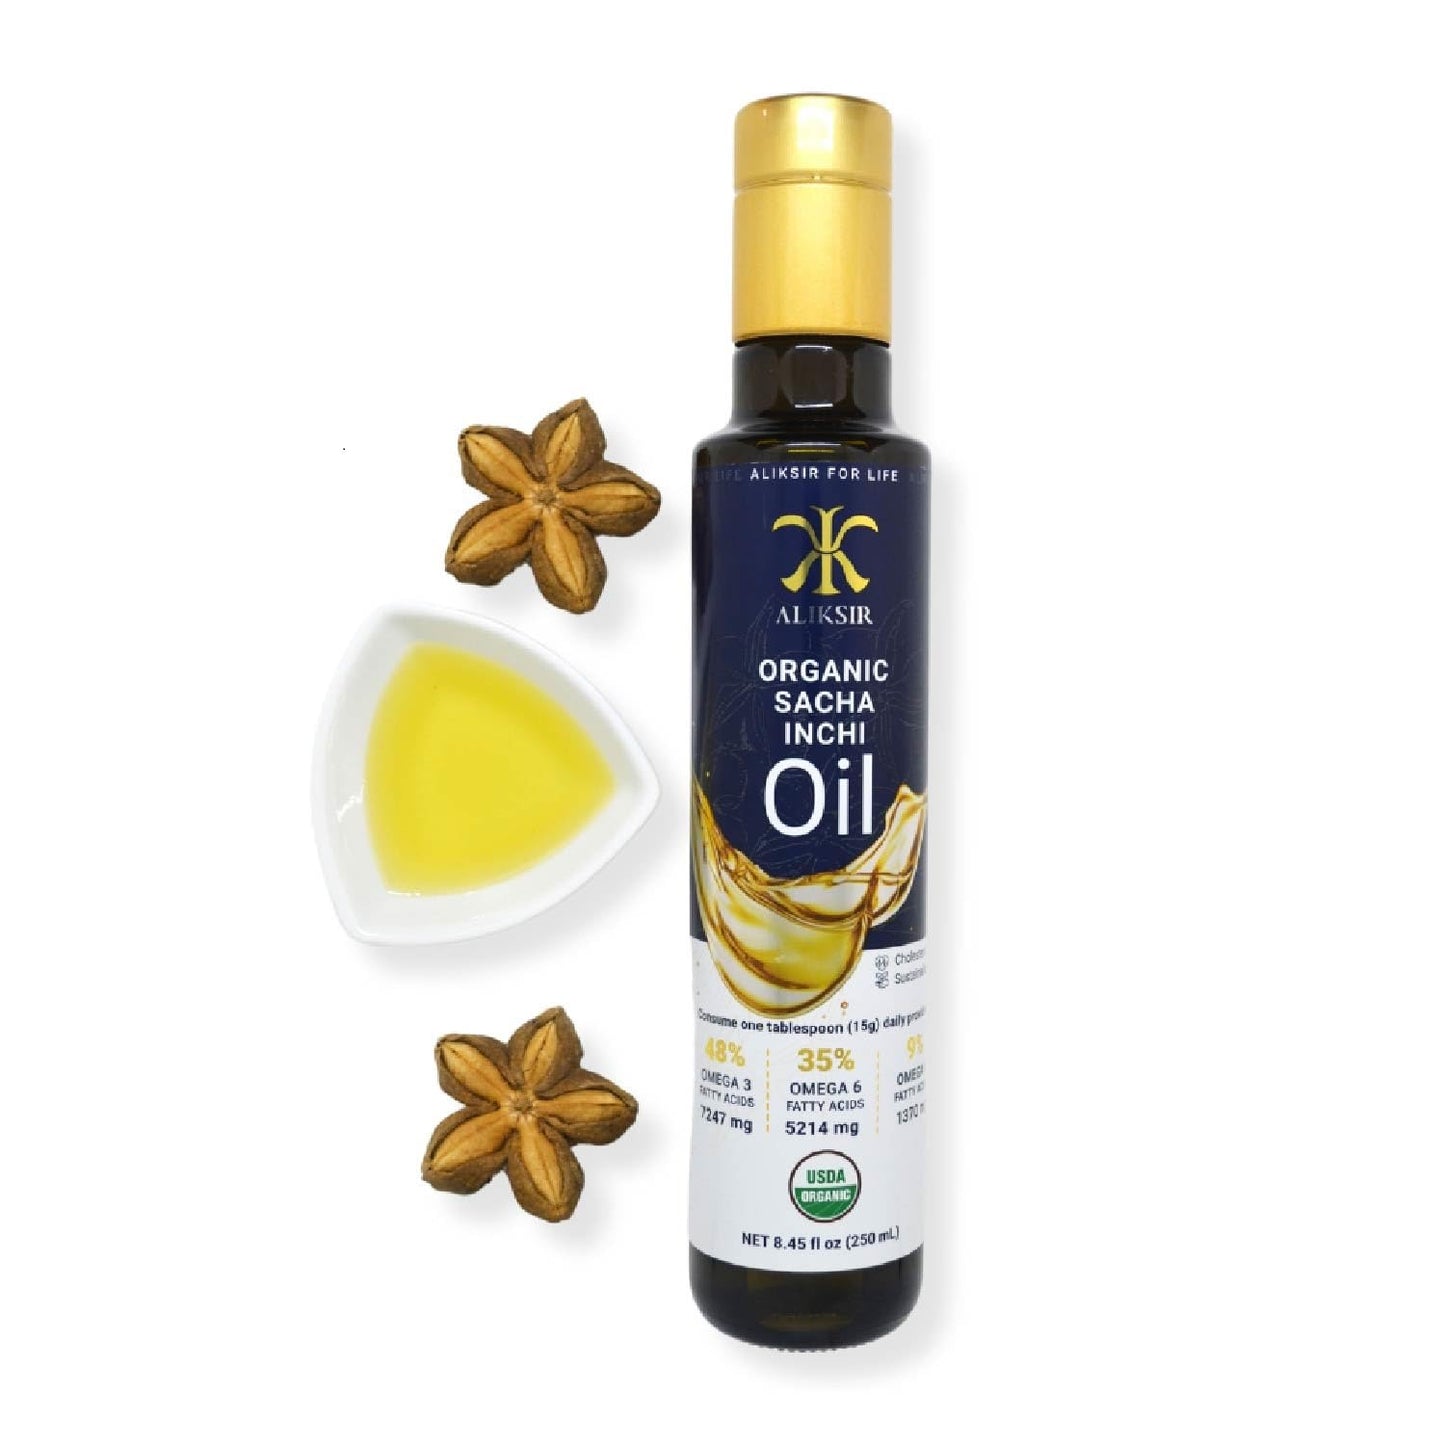 Organic Sacha Inchi Oil - Cold Pressed, 100% Natural with Omega-3 48%, Omega-6 35%, and Omega-9